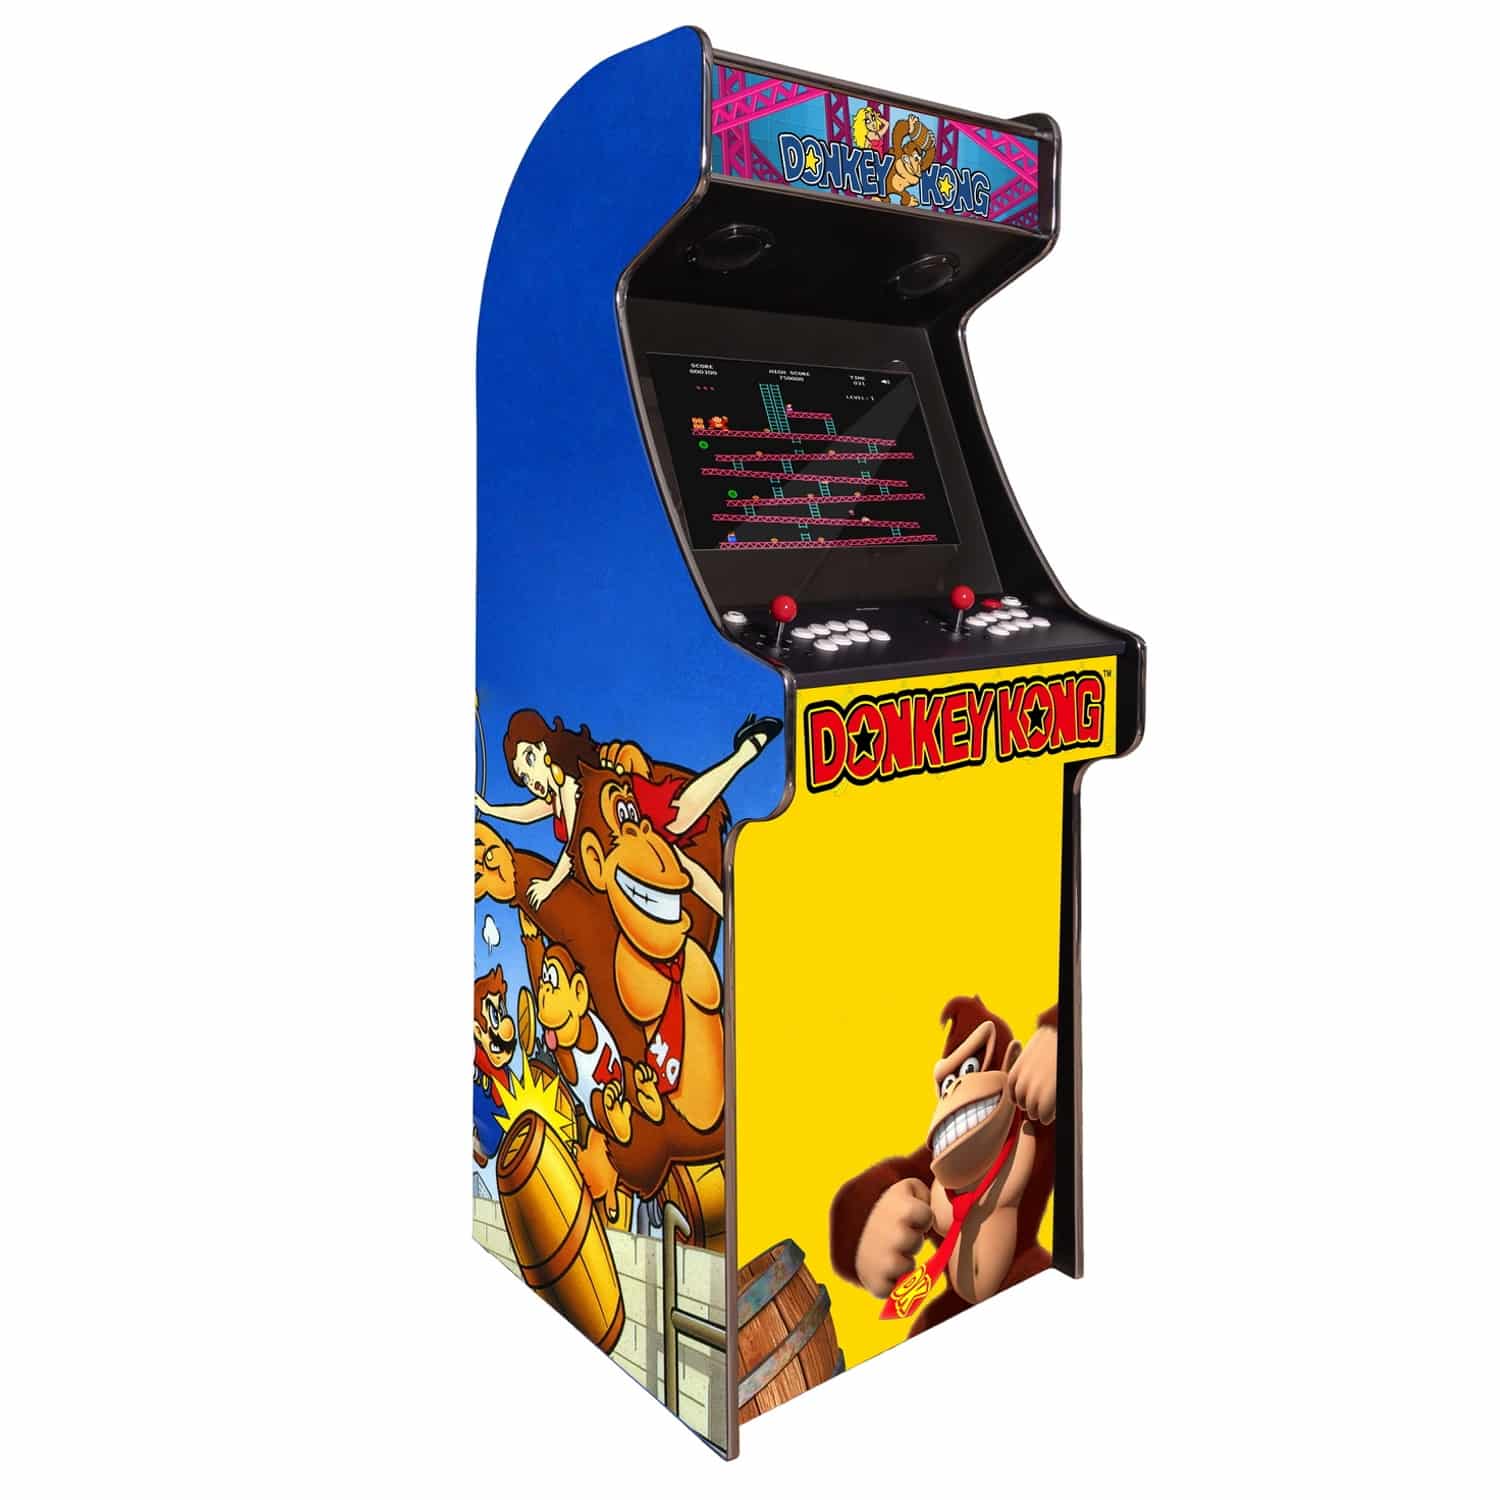 arcade-machine-borne-born-jeux-cafe-anciens-retro-recalbox-neuve-moderne-hdmi-pas-cher-vente-achat-prix-france-belgique-donkeykong